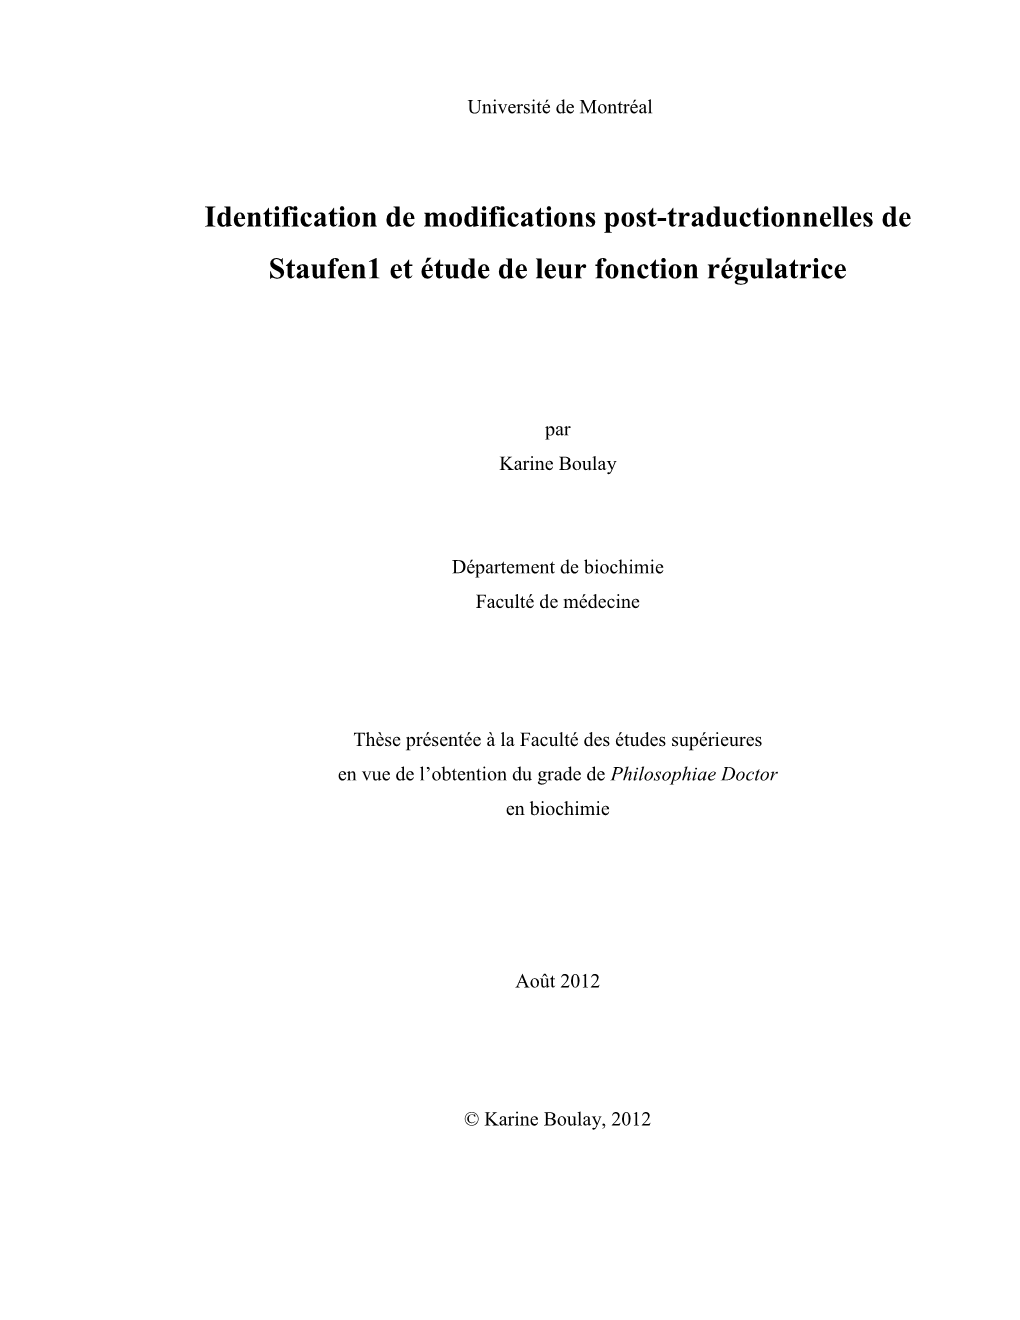 Identification De Modifications Post-Traductionnelles De Staufen1 Et Étude De Leur Fonction Régulatrice